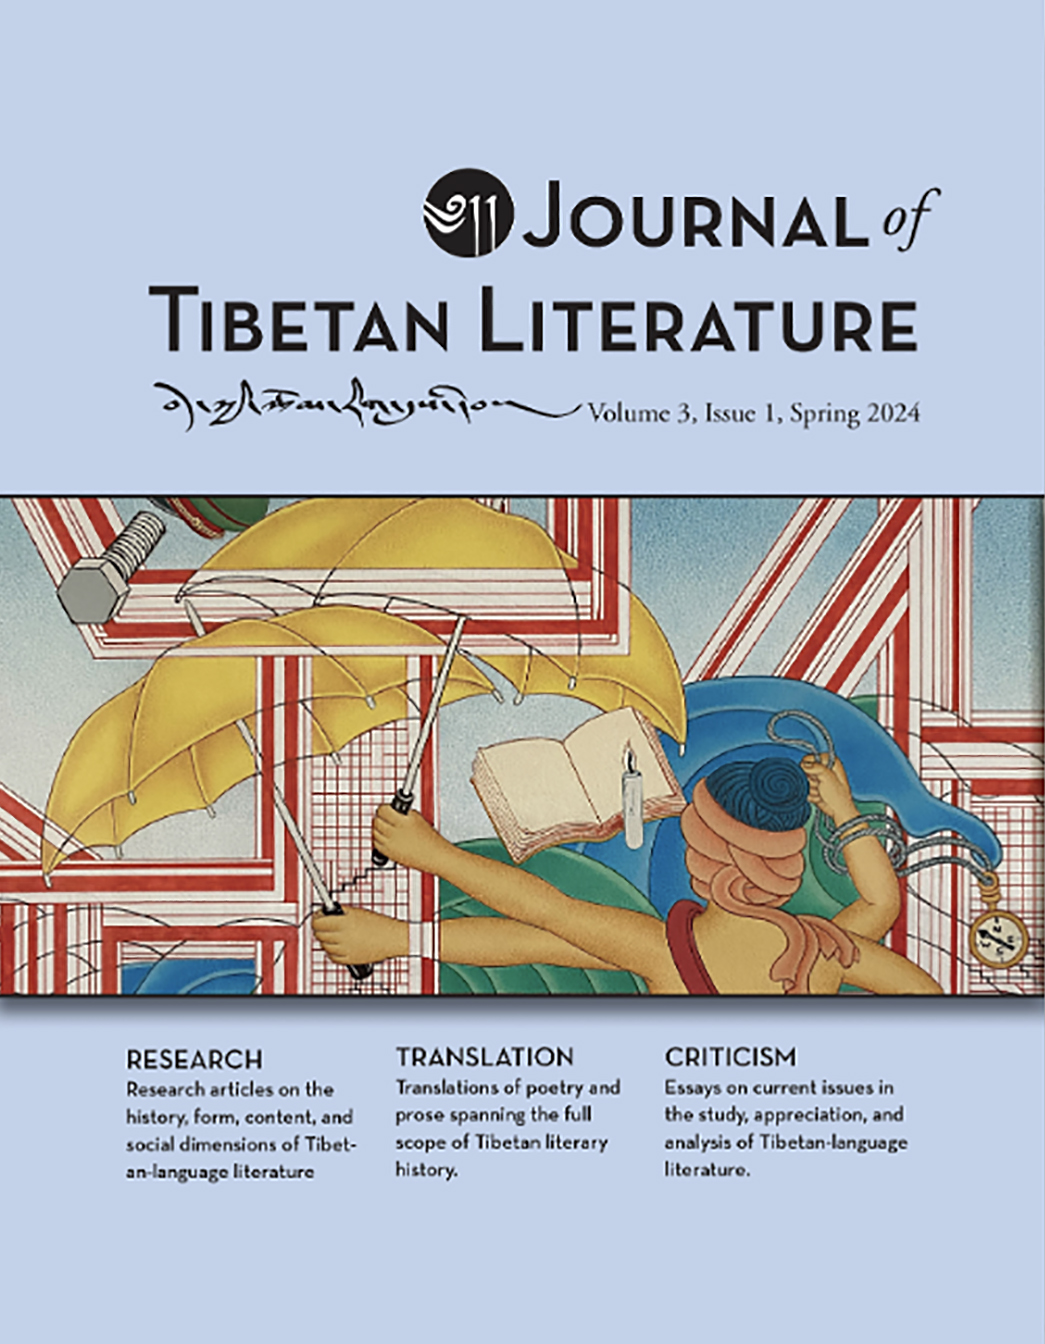 Journal of Tibetan Literature Vol 3 Issue 1.jpg